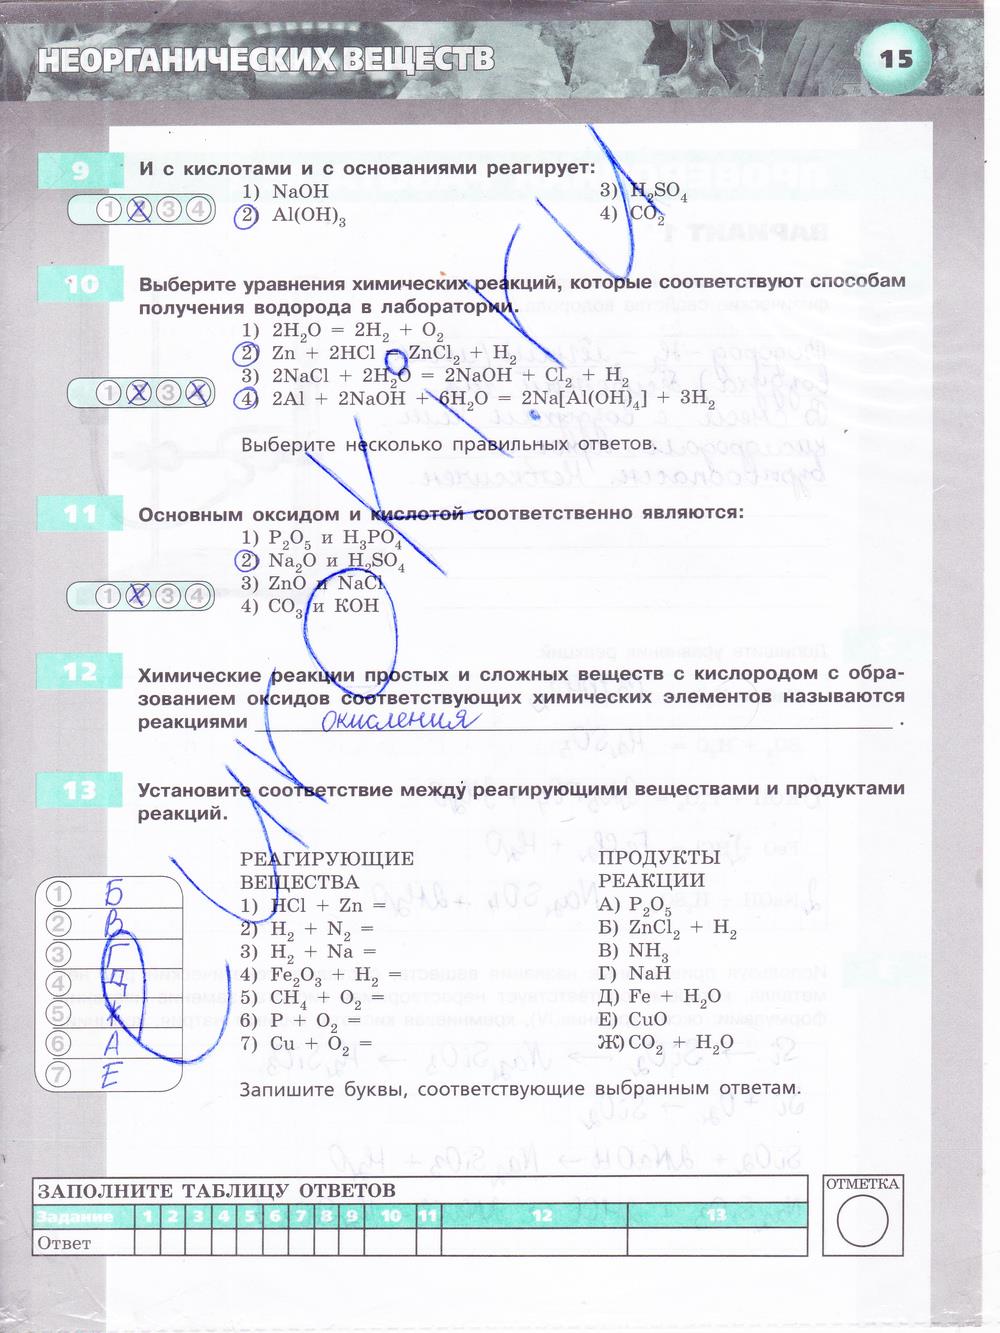 гдз 8 класс тетрадь-экзаменатор страница 15 химия Бобылева, Бирюлина